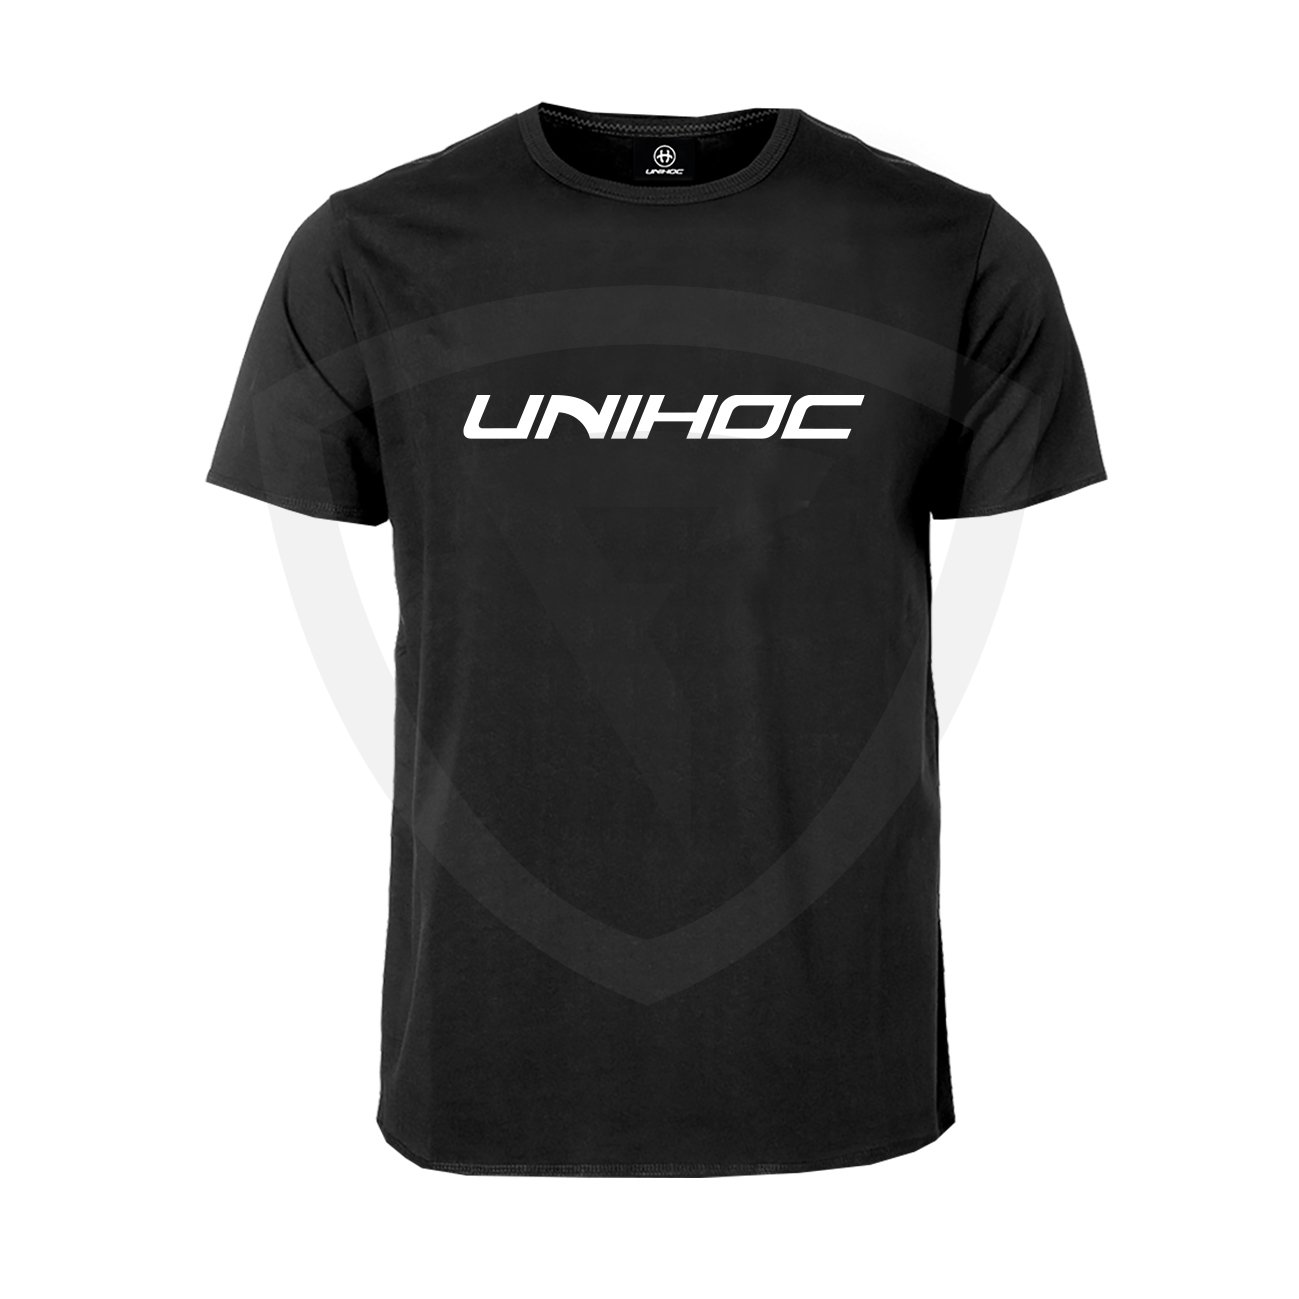 Unihoc T-shirt Classic Black SR XL černá